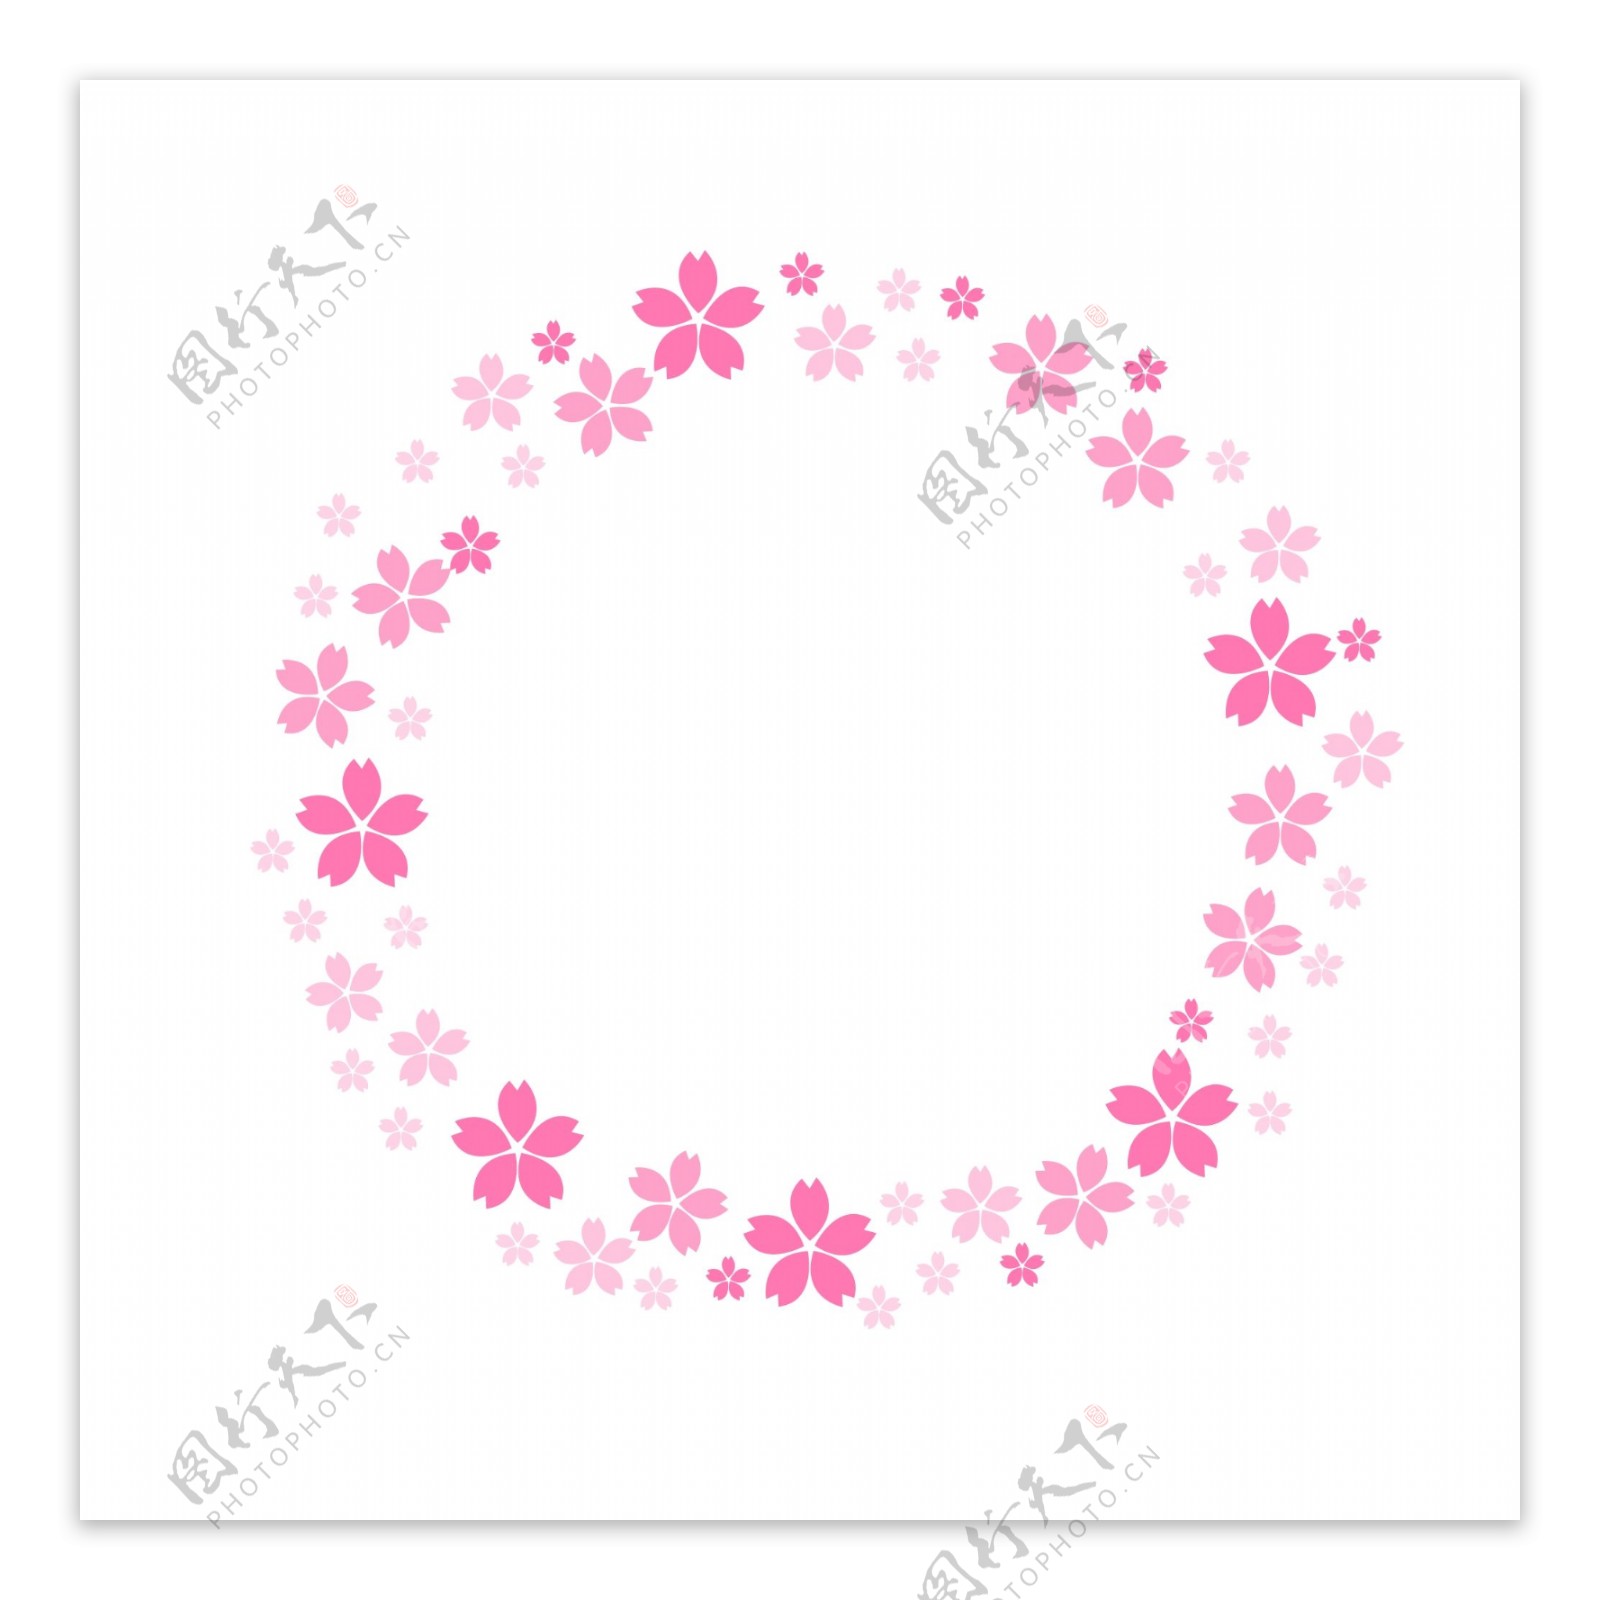 春季粉色樱花边框卡通素材下载